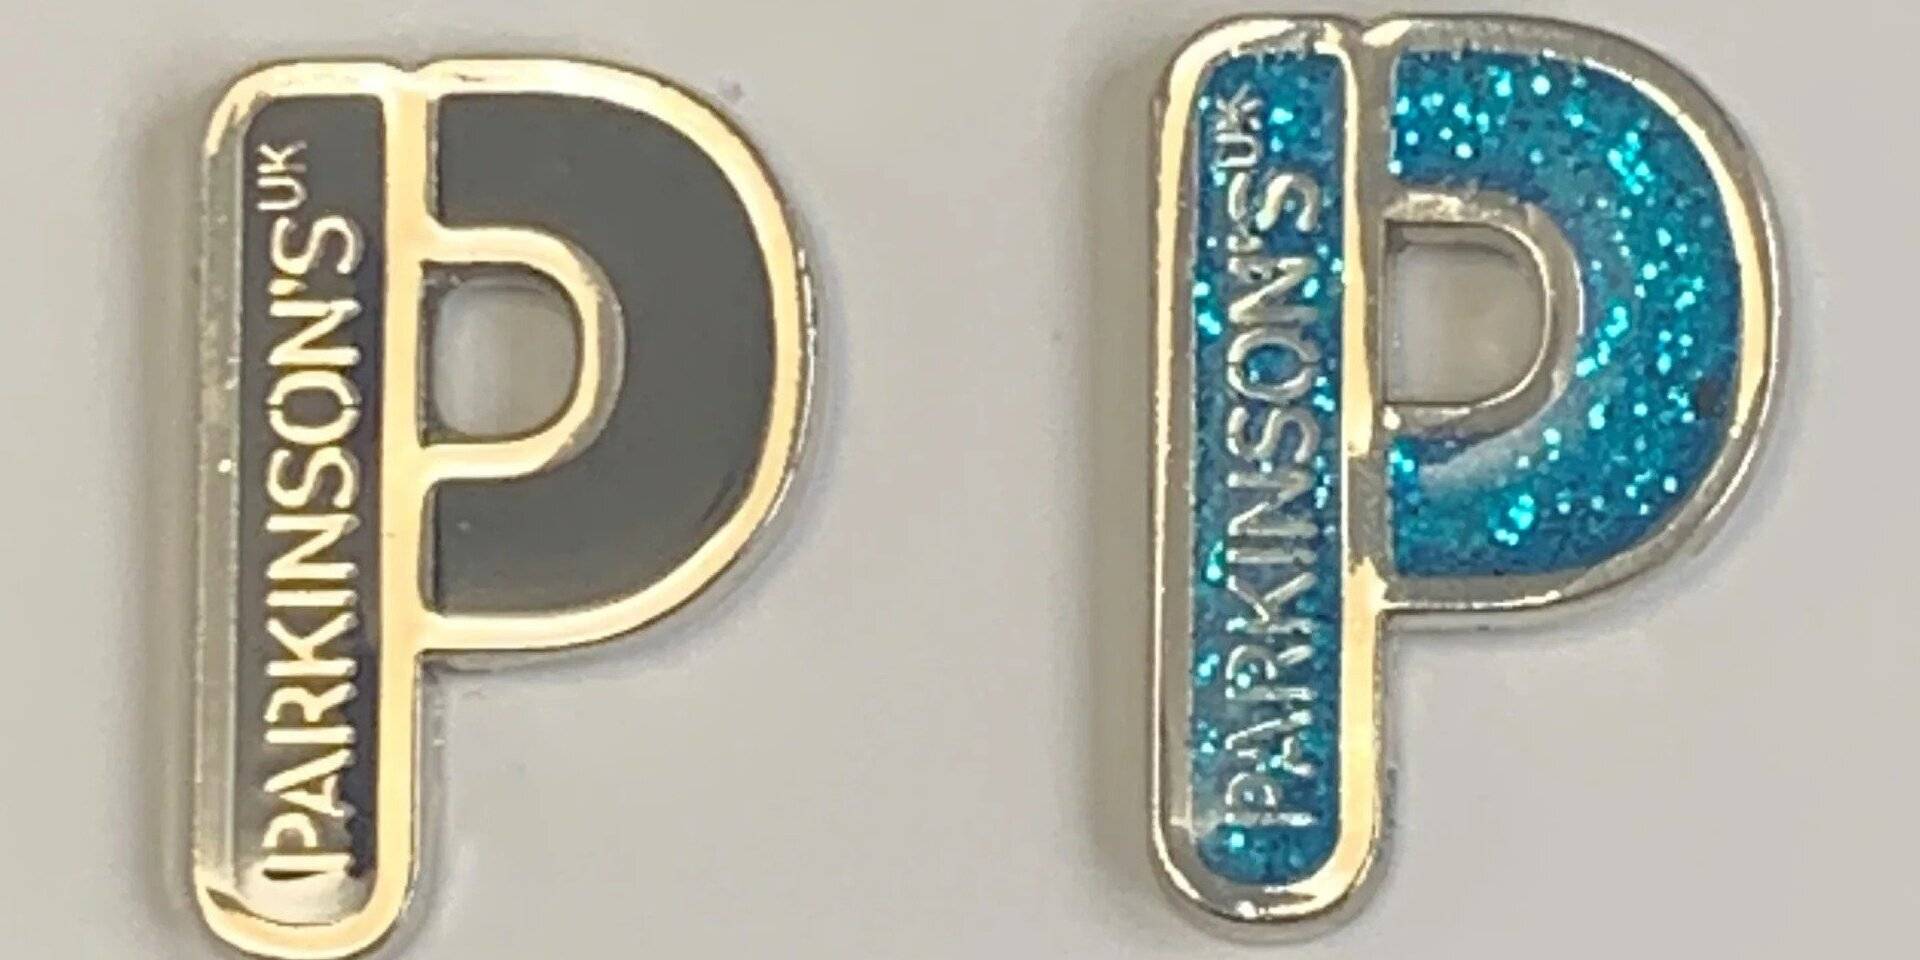 Parkinson's UK merchandise